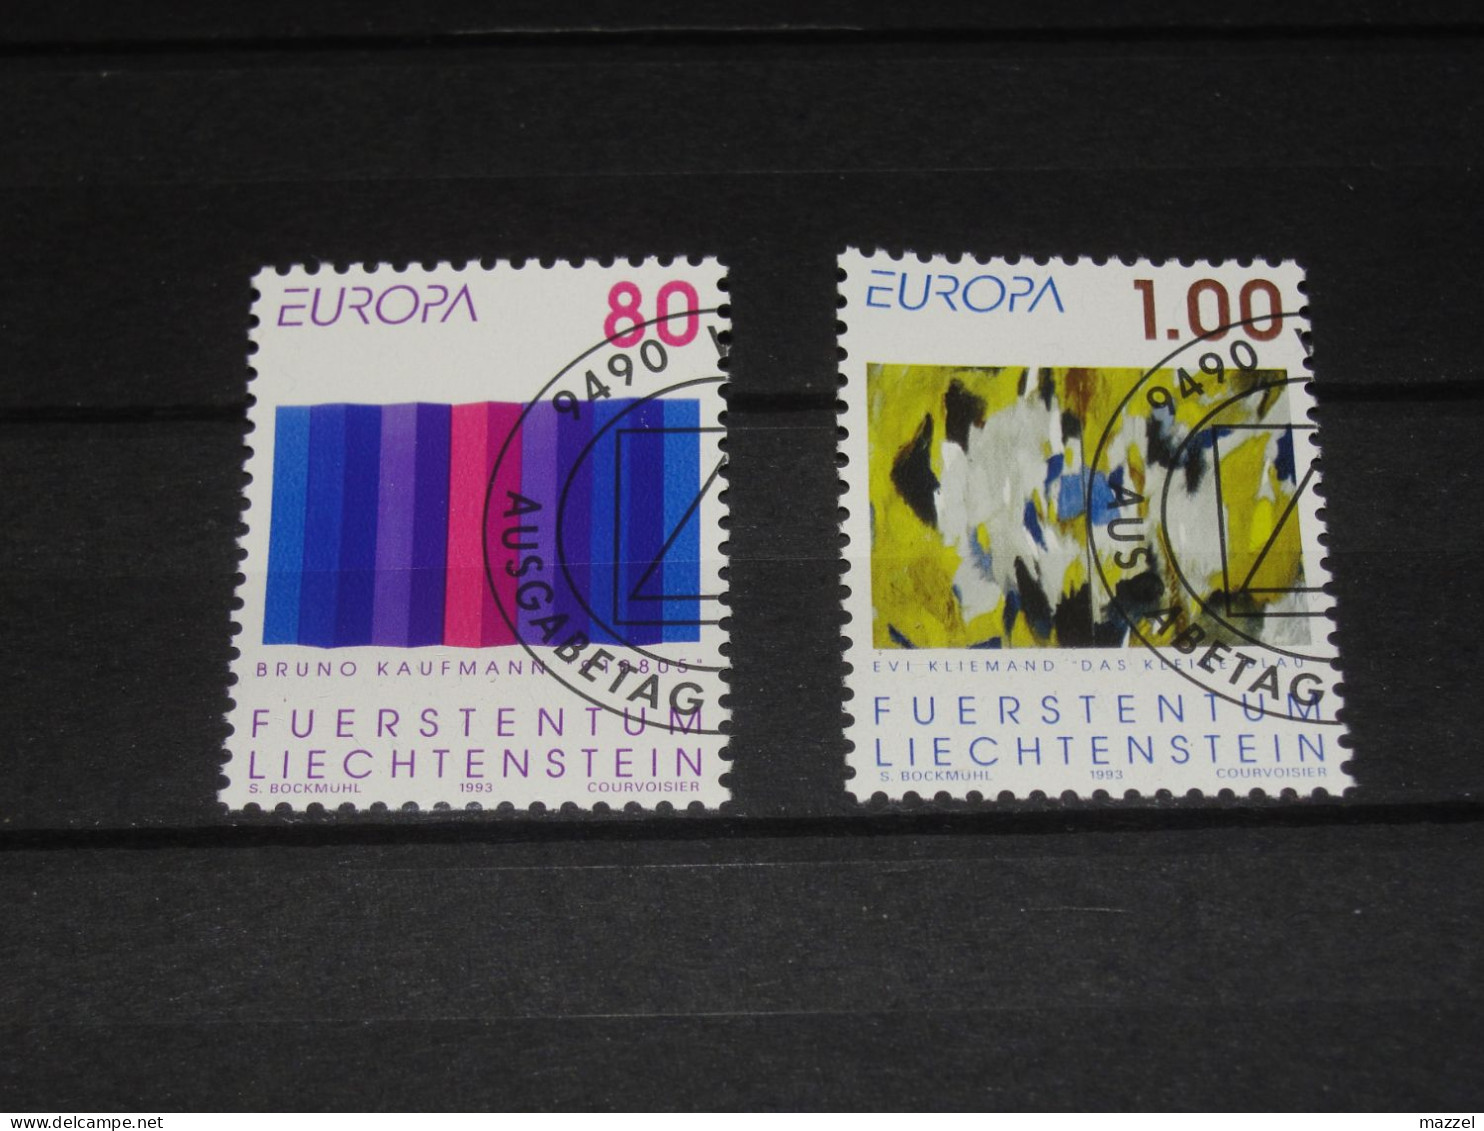 LIECHTENSTEIN   SERIE  1054-1055  GEBRUIKT (USED) - Used Stamps